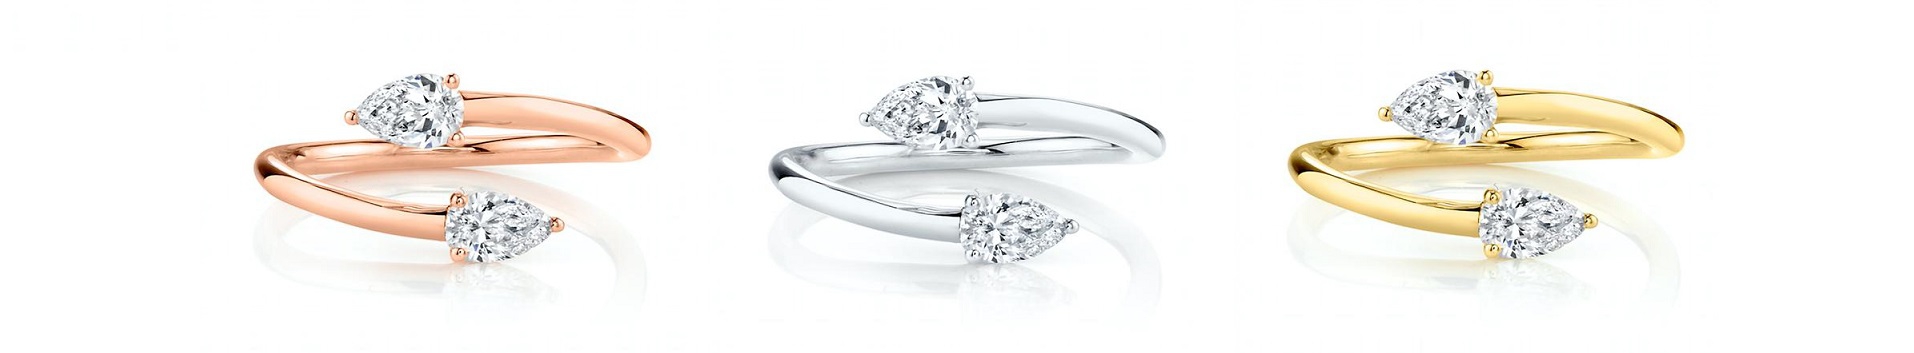 anillos de compromiso diamante